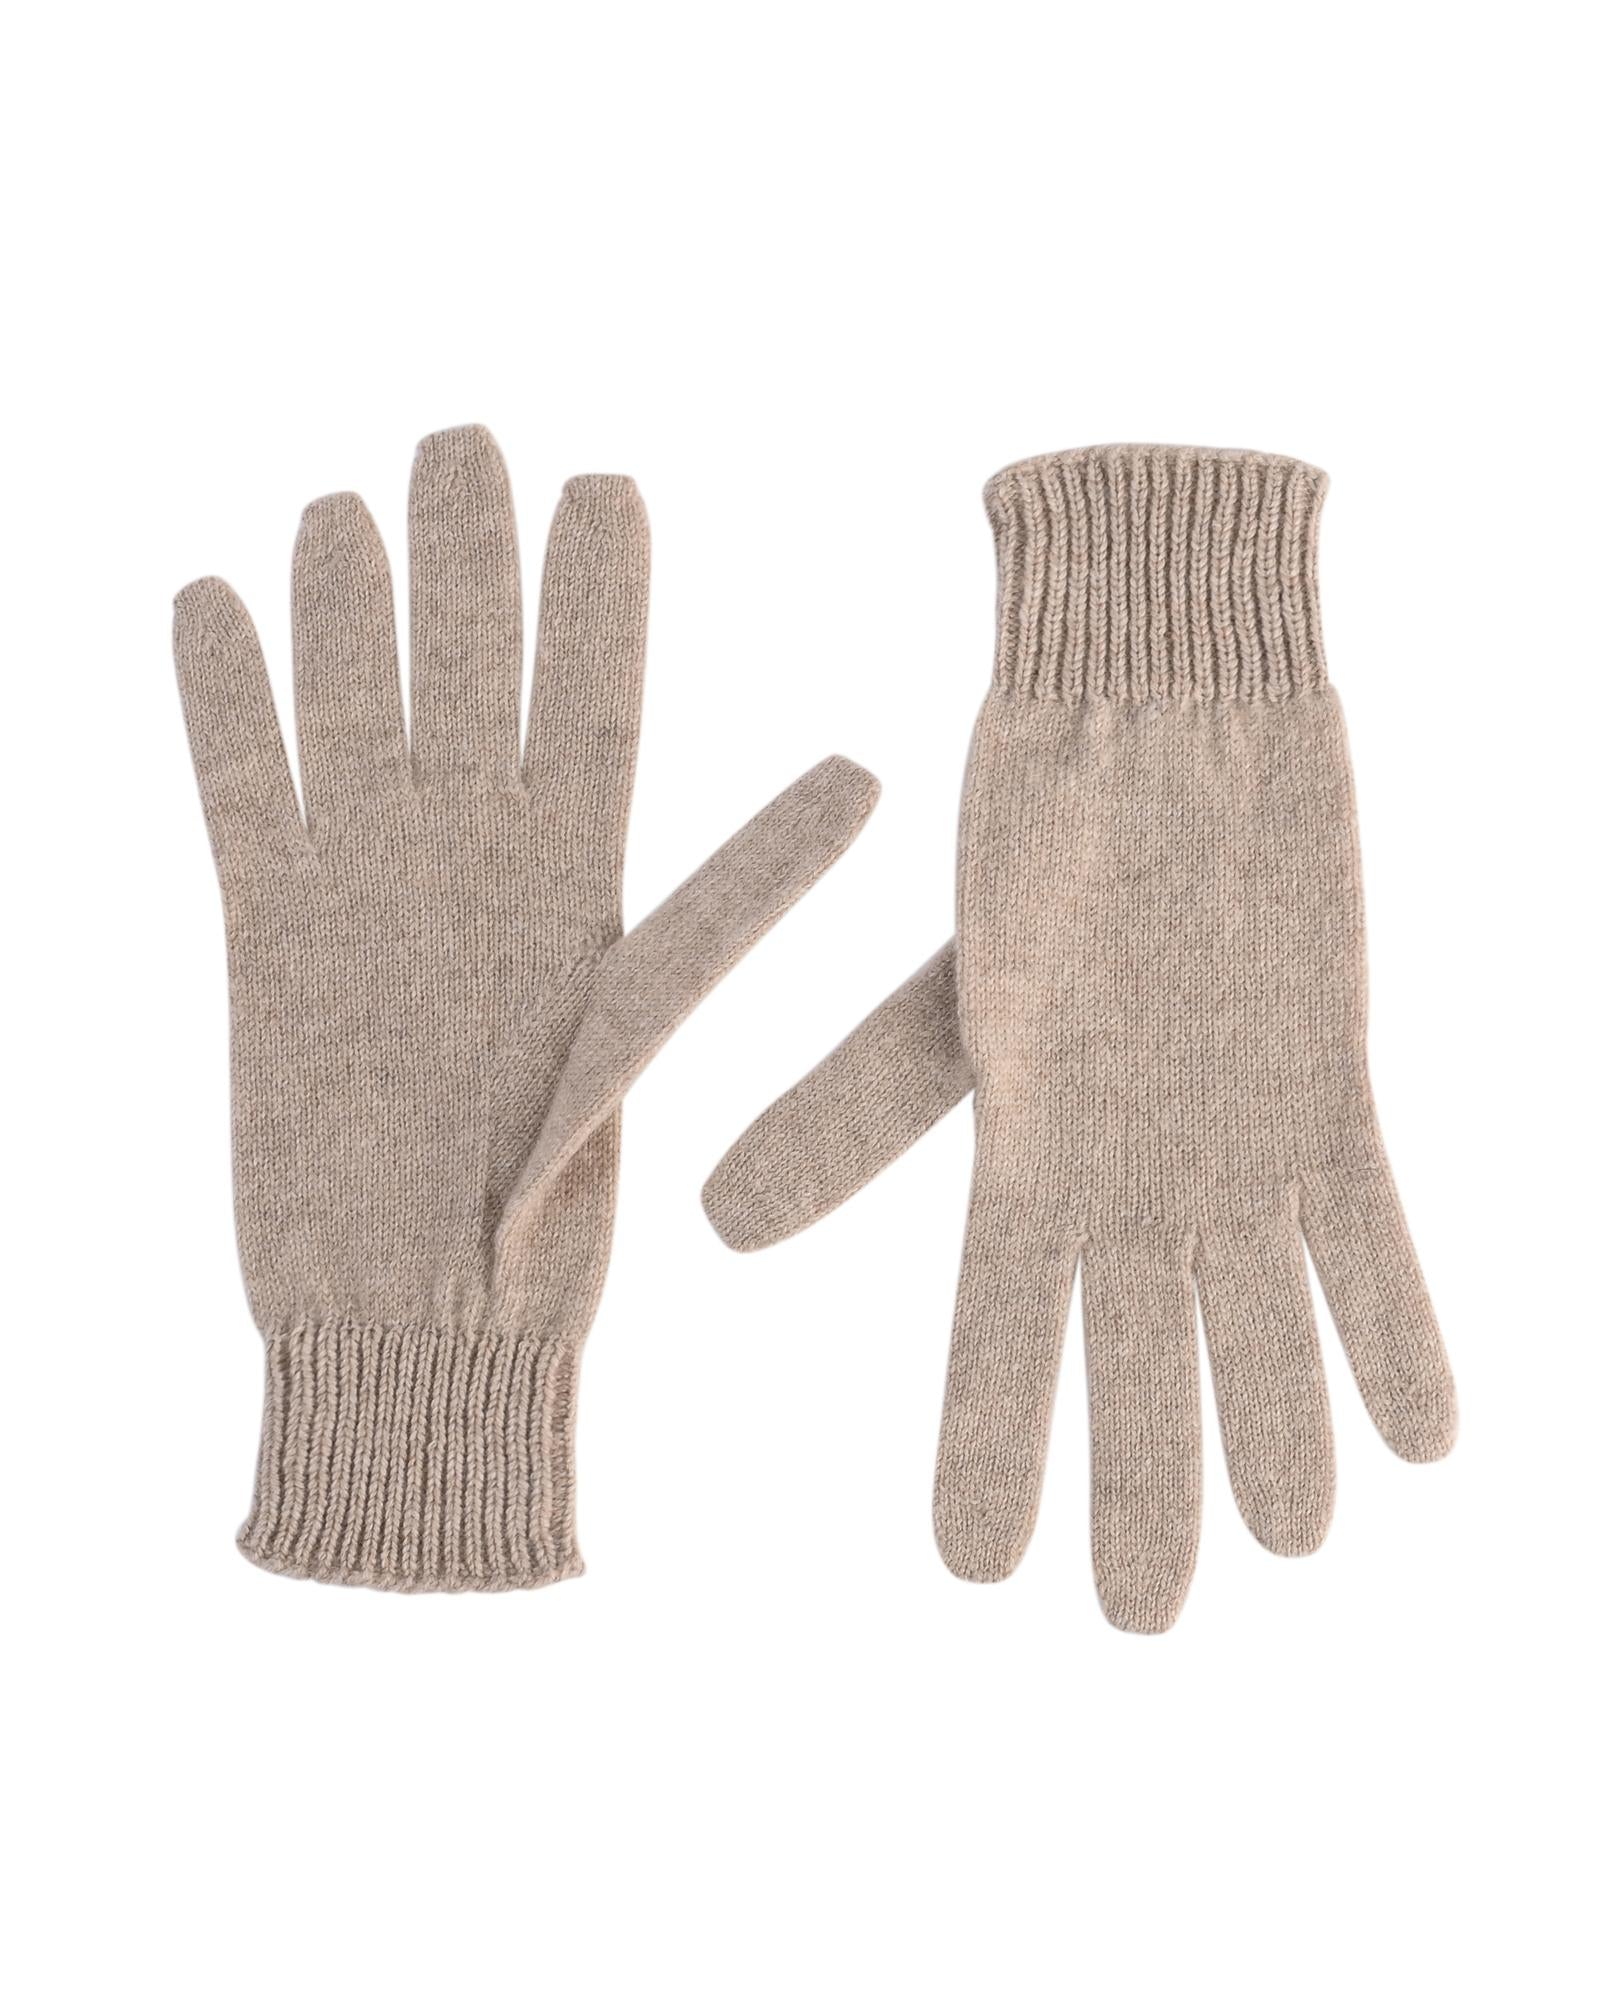 Women's Exquisite Cashmere Womens Short Gloves in Beige - M